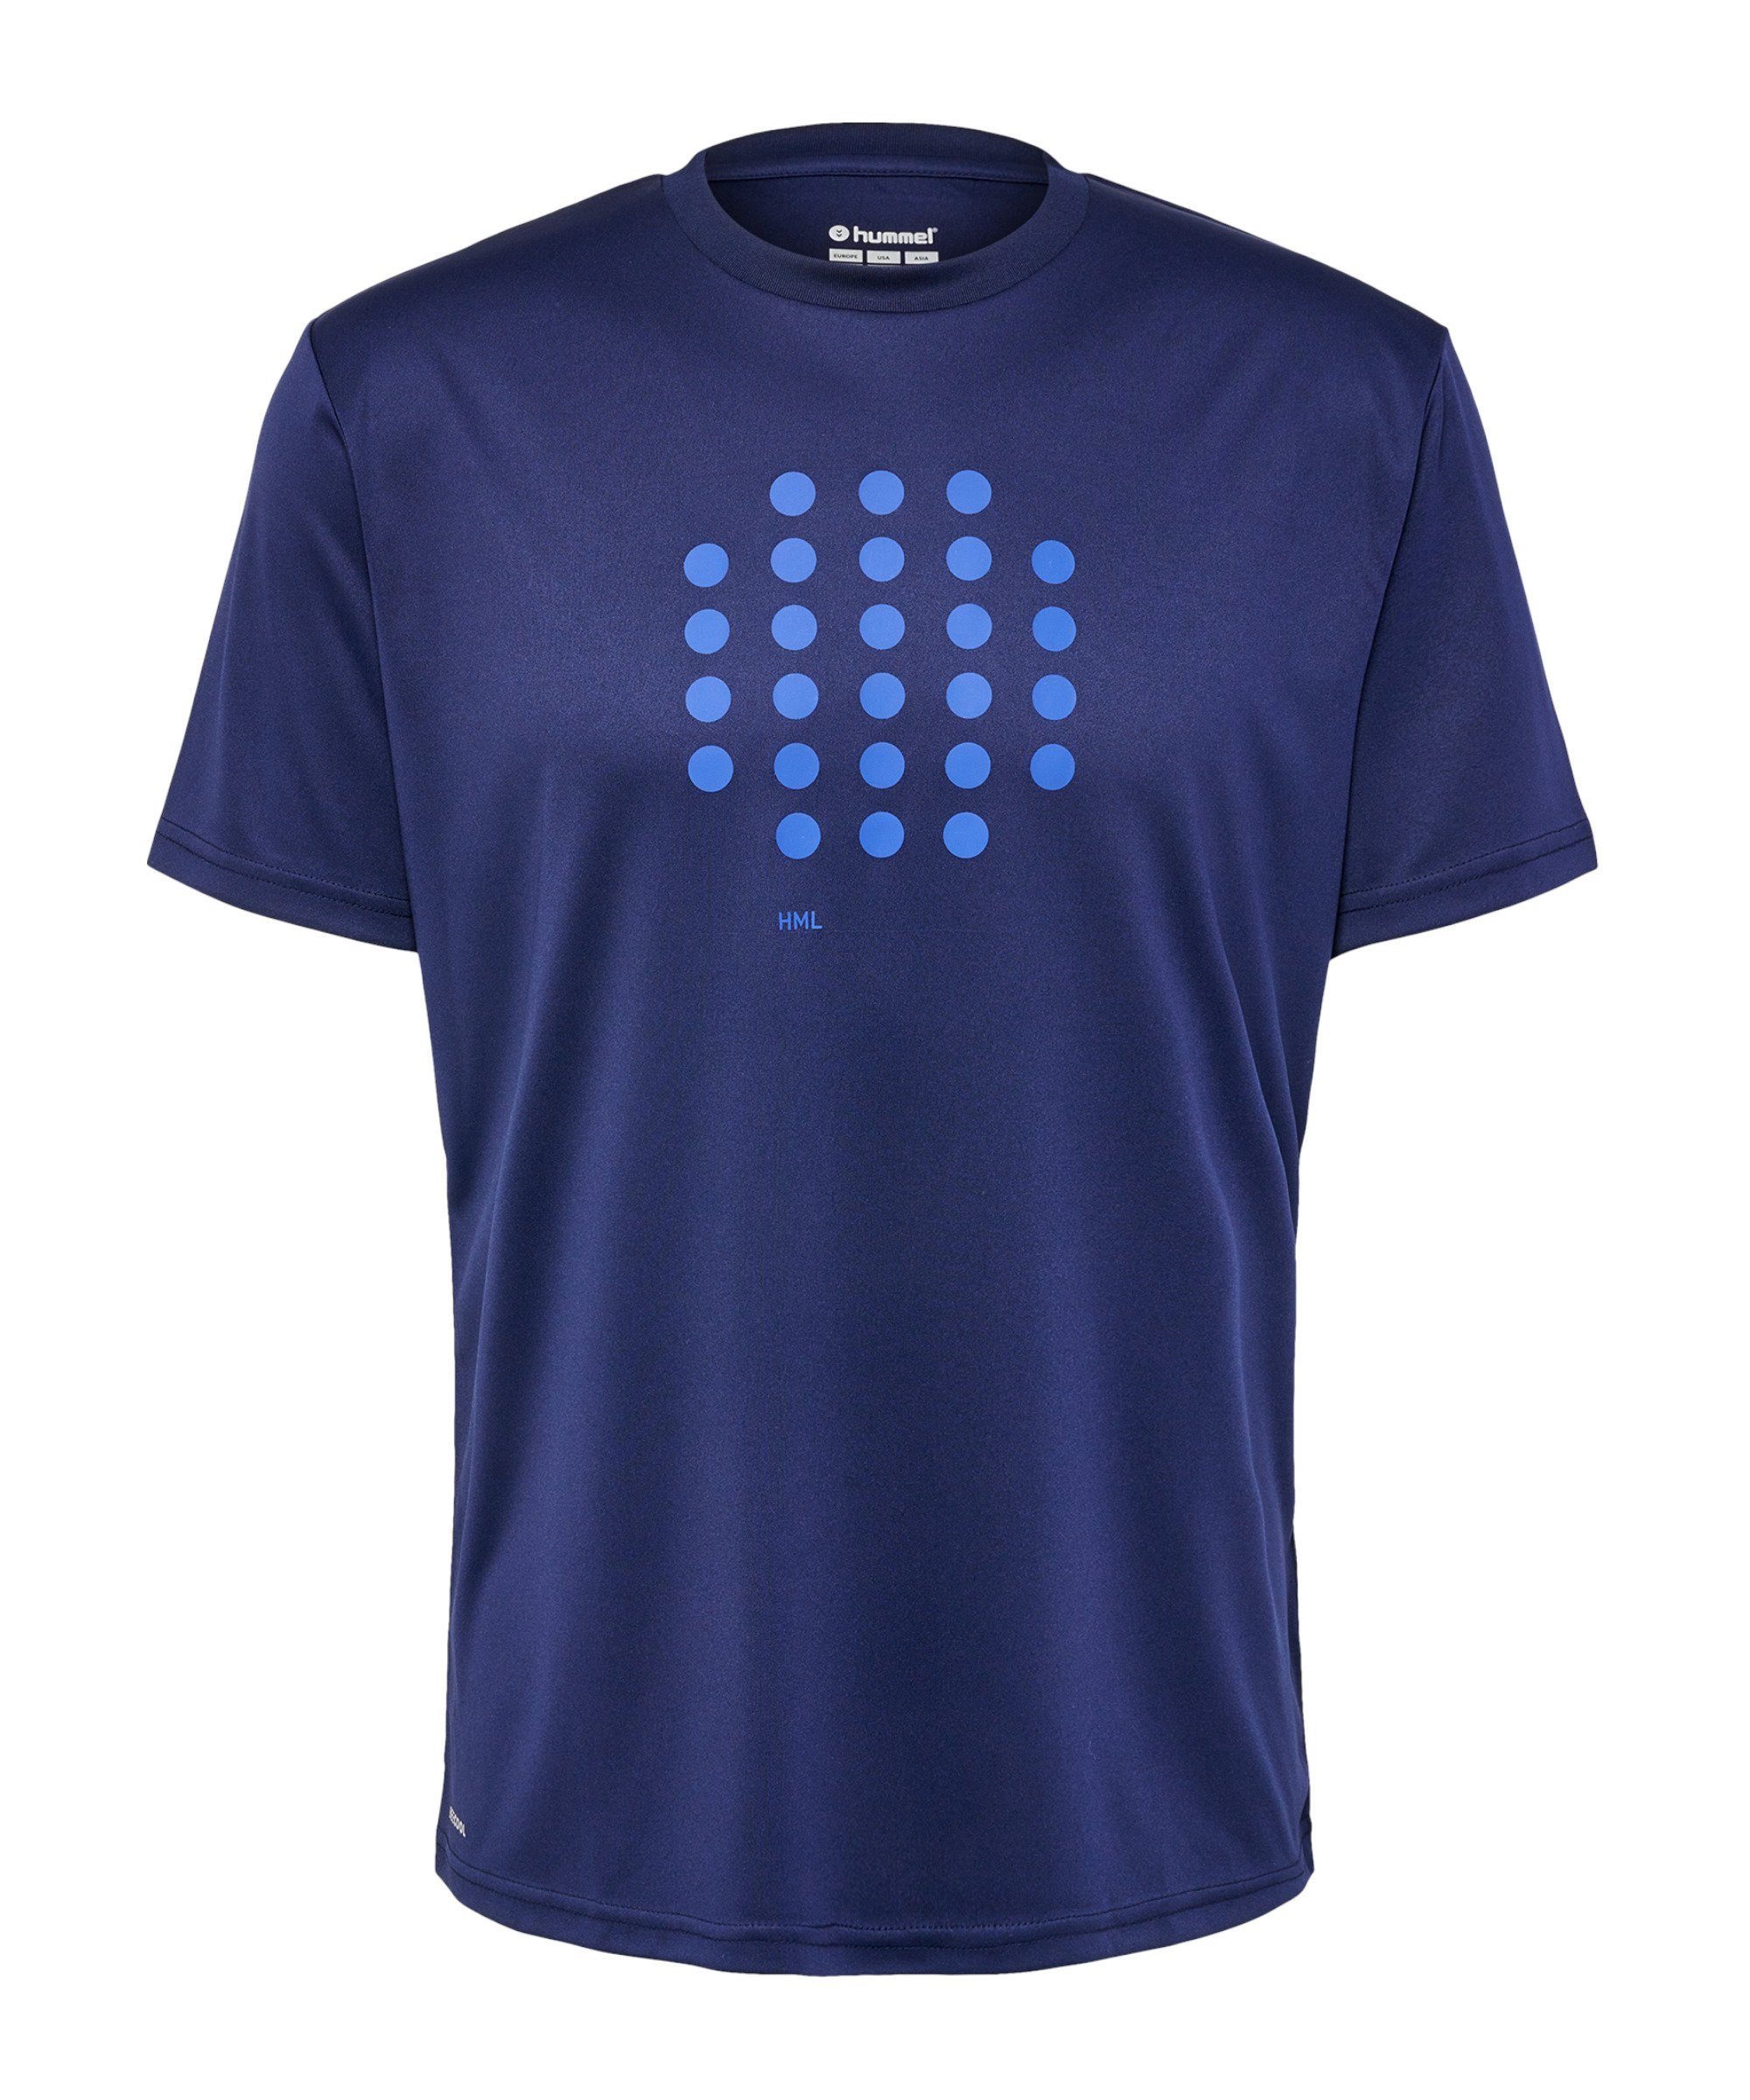 hmlCOURT blau T-Shirt default hummel T-Shirt